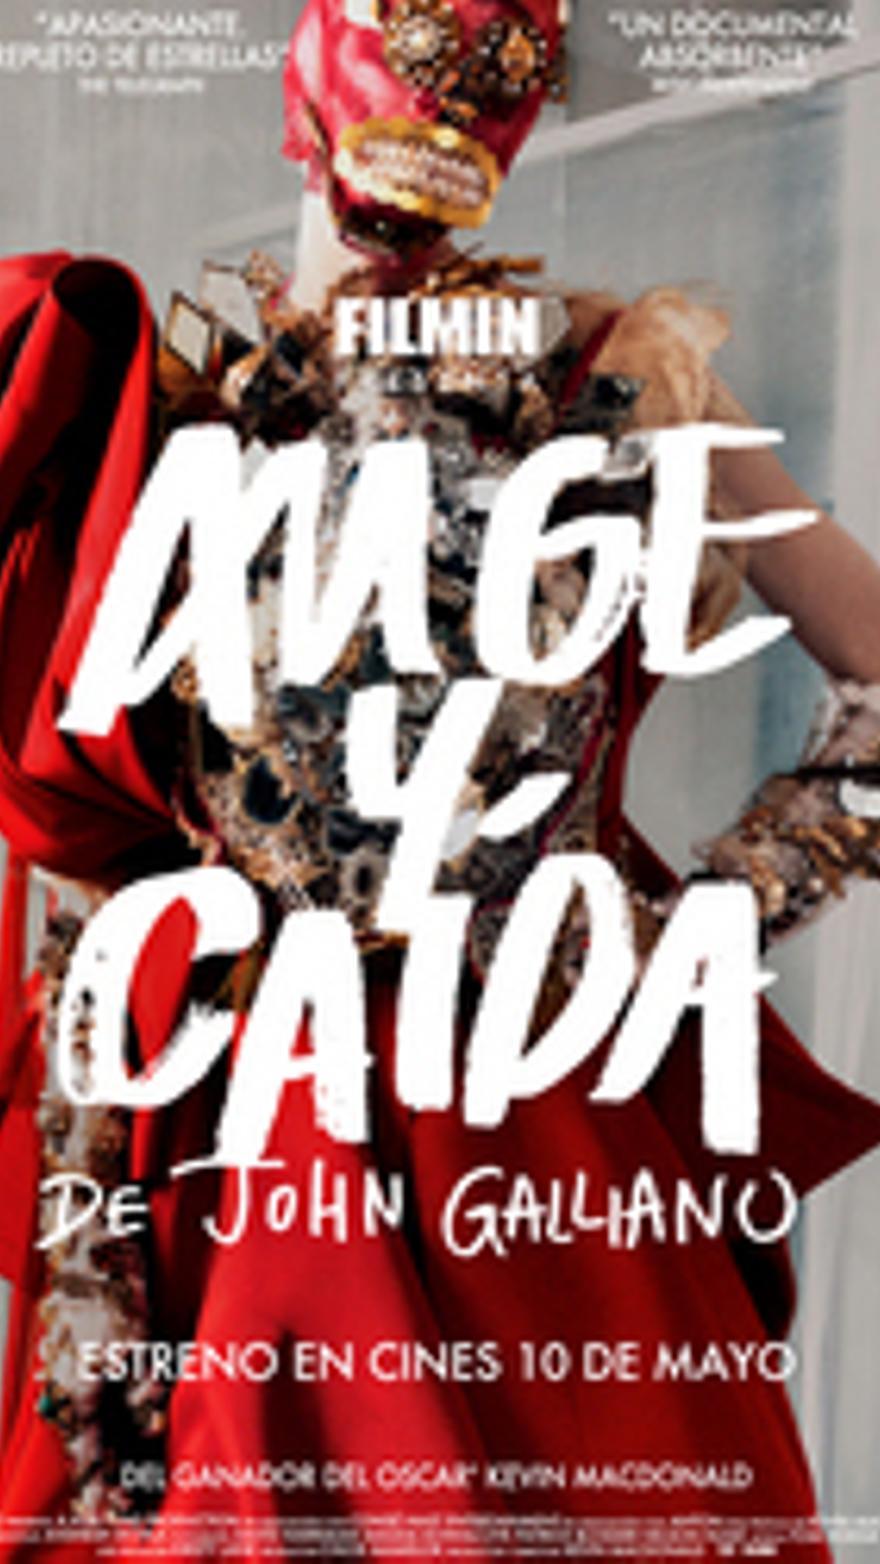 Auge y caída de John Galliano V.O.S.E.